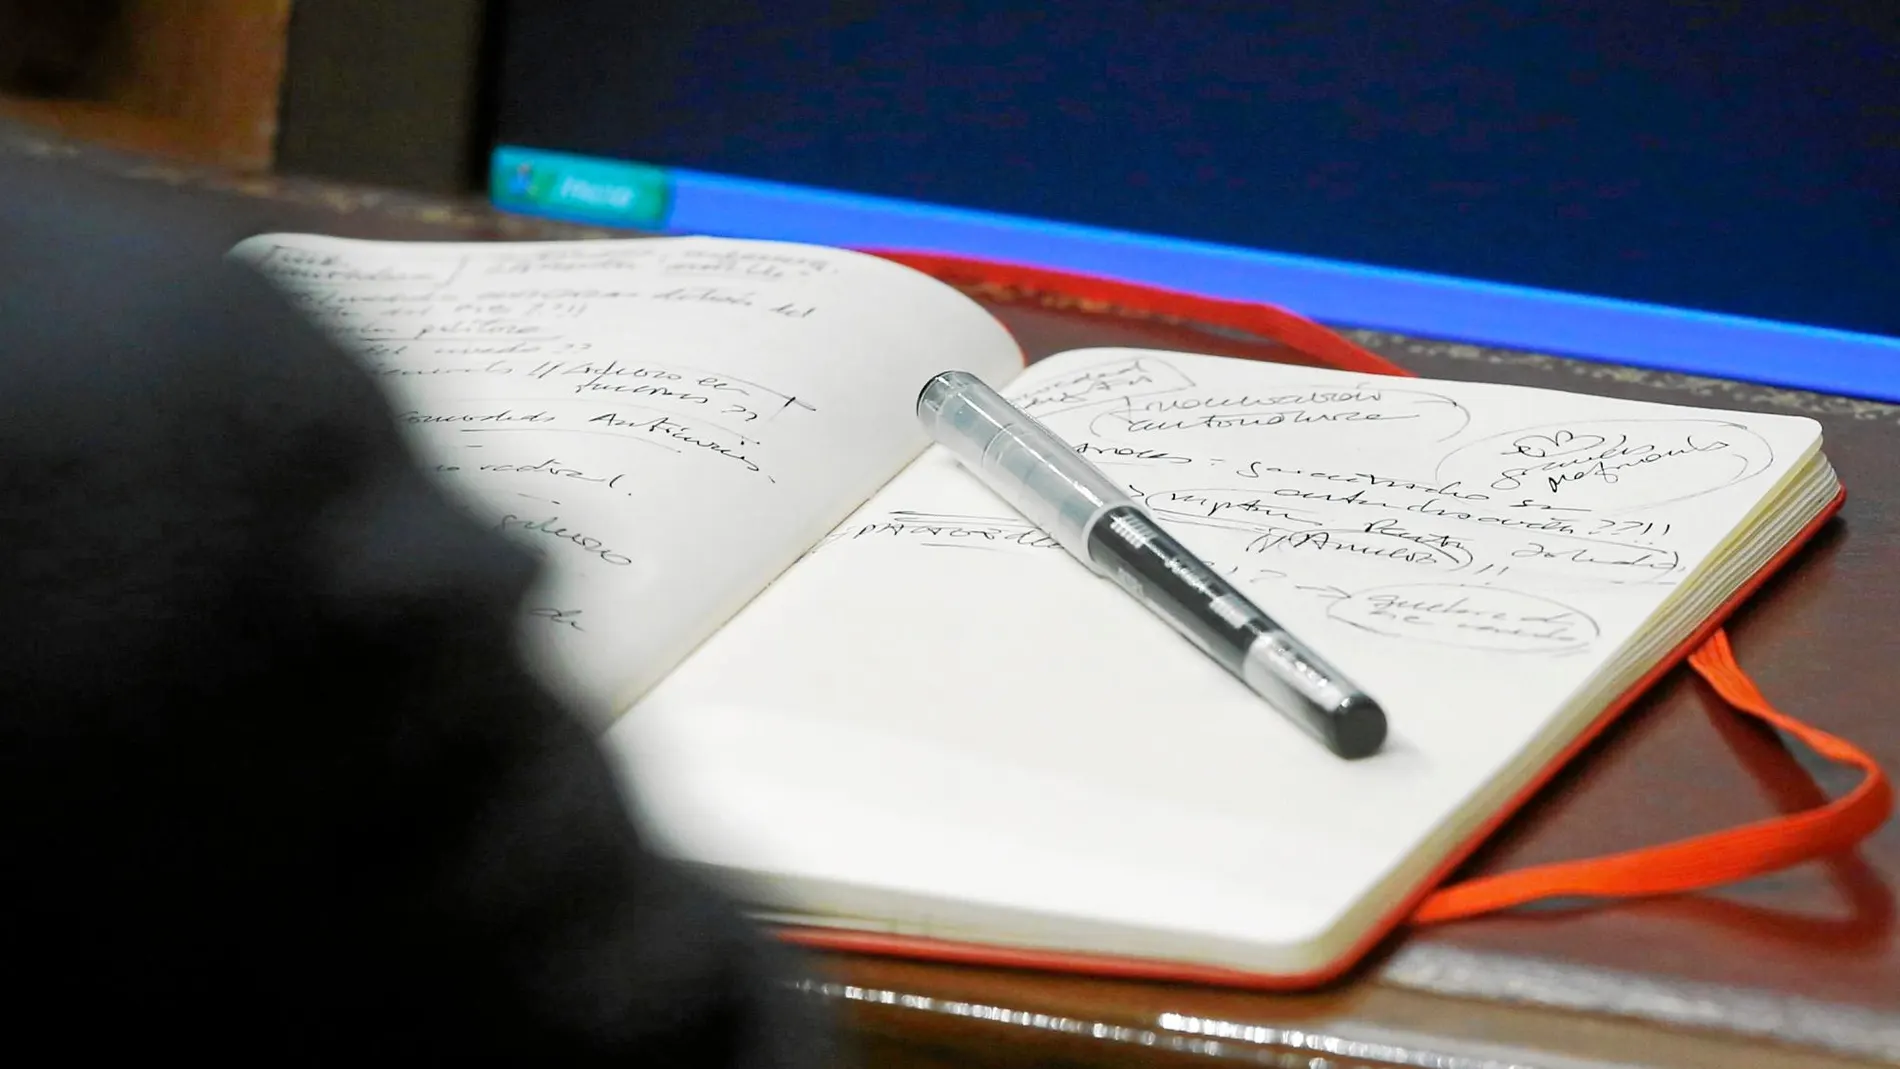 El presidente en funciones toma notas en su cuaderno durante una sesión en el Congreso en una imagen de archivo